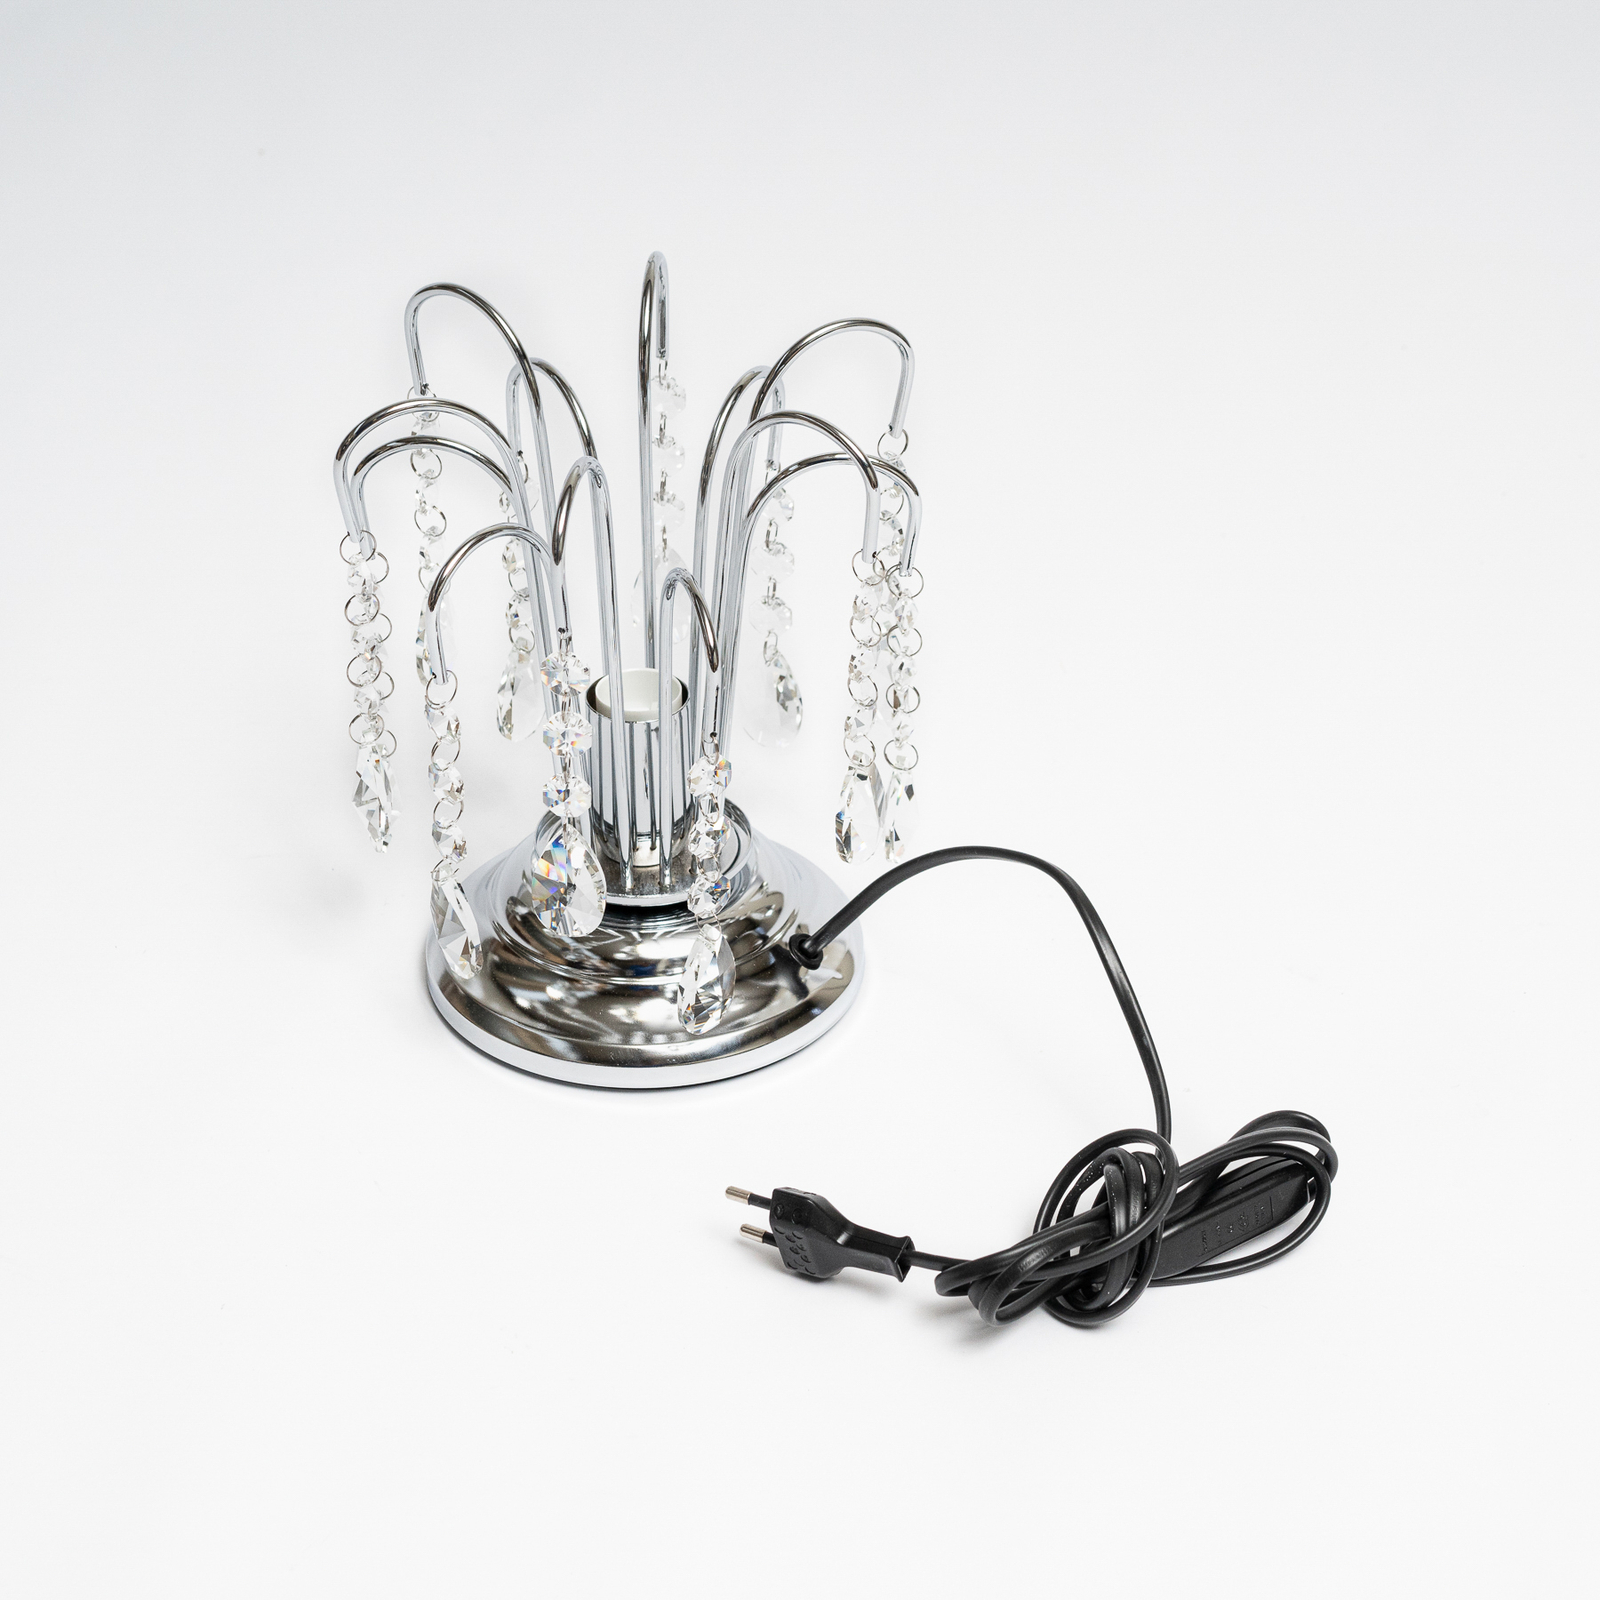 Pioggia bordlampe med krystallregn, 26 cm, krom